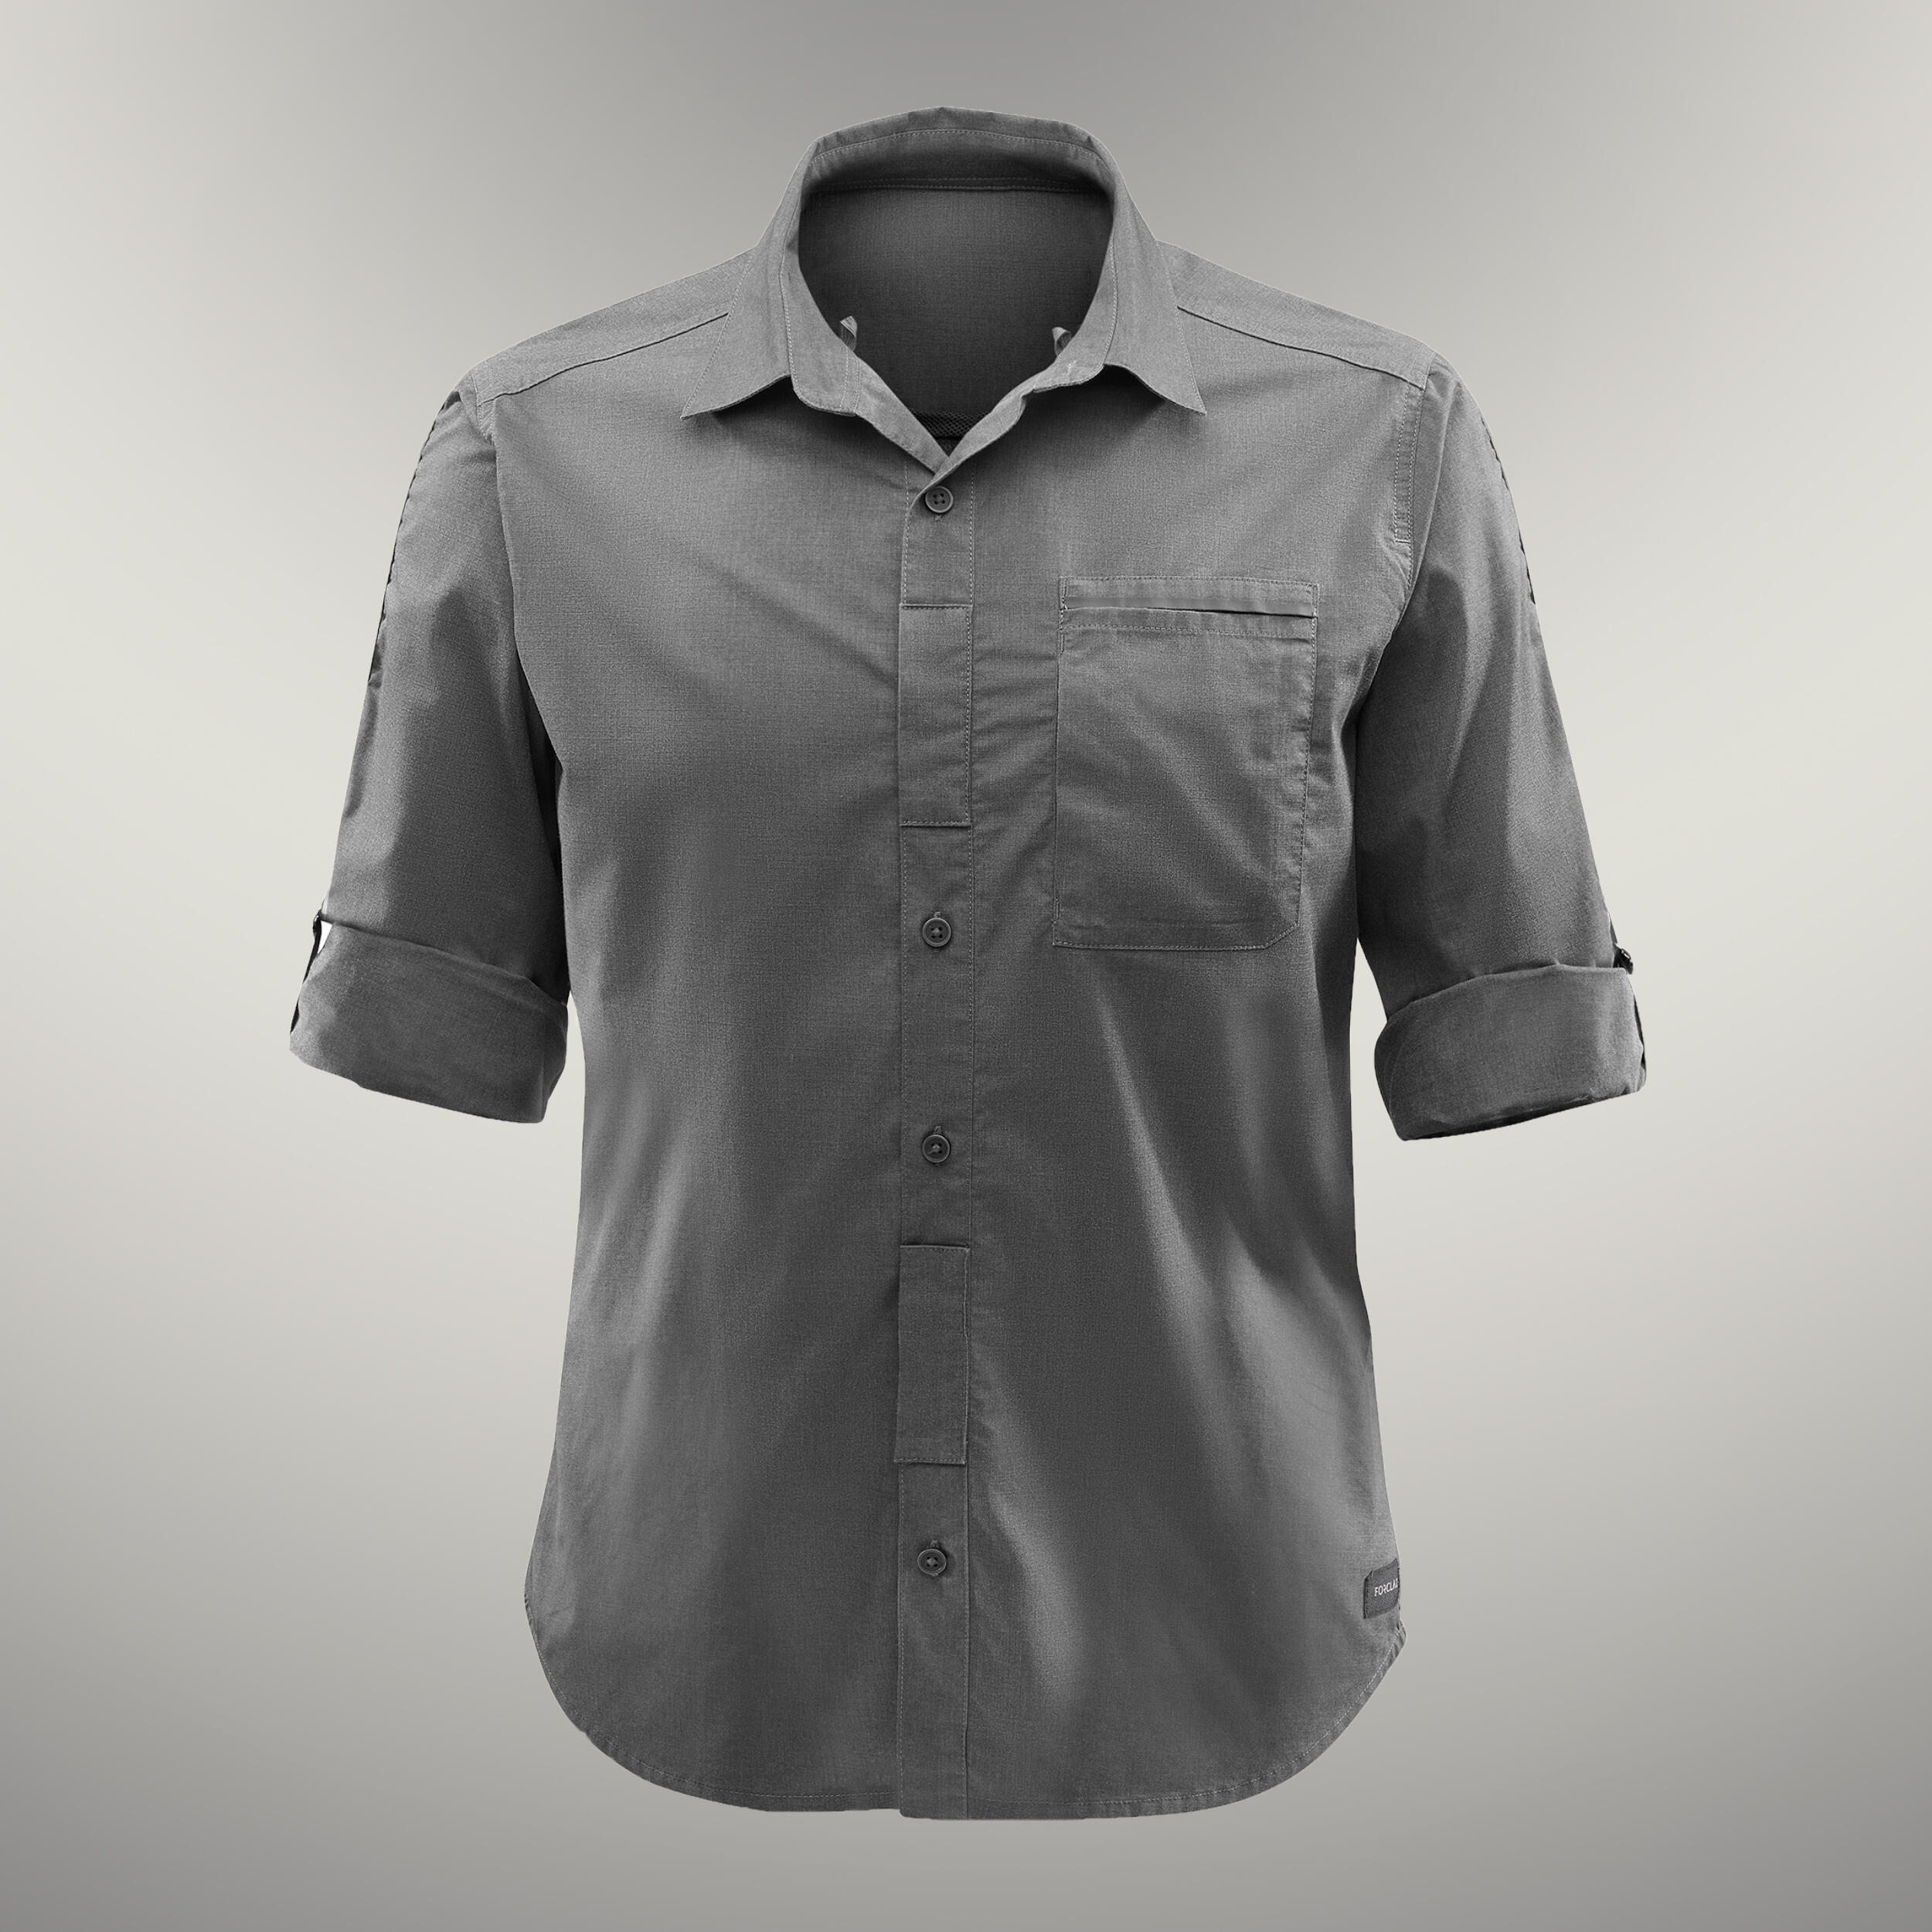 Forclaz Men’s Long-sleeved Travel Trekking Shirt Travel 500 Modul - Khaki